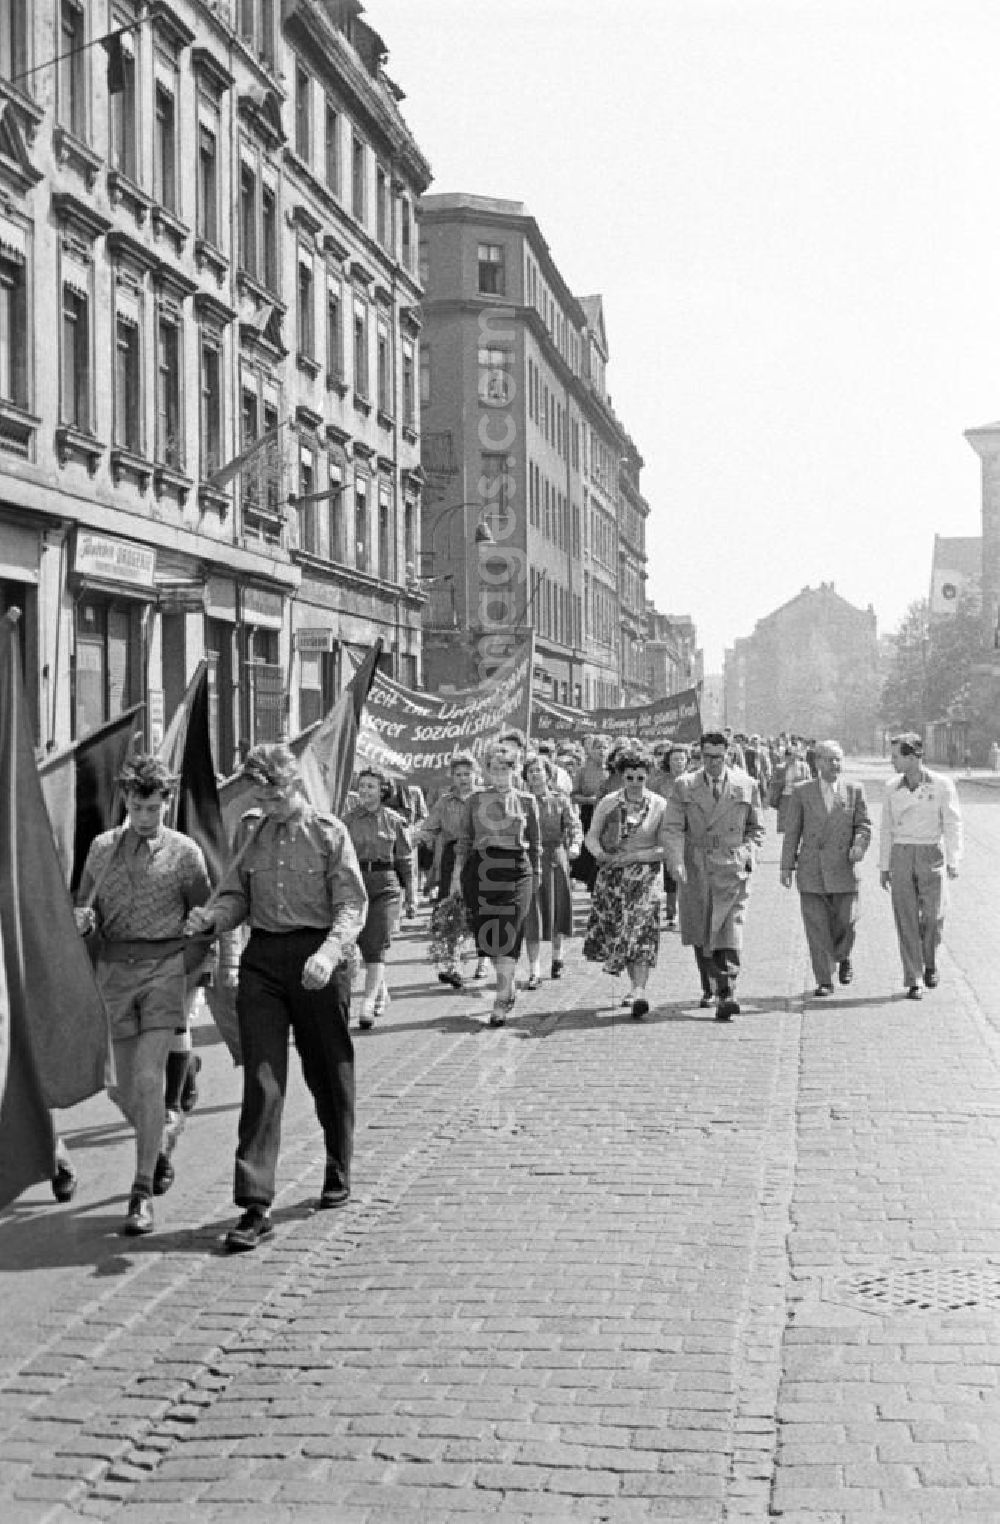 GDR image archive: Leipzig - FDJler der Richard-Wagner-Oberschule in Leipzig tragen auf der Demonstration zum 1. Mai 1957 Einheitskleidung, Transparente und Fahnen.